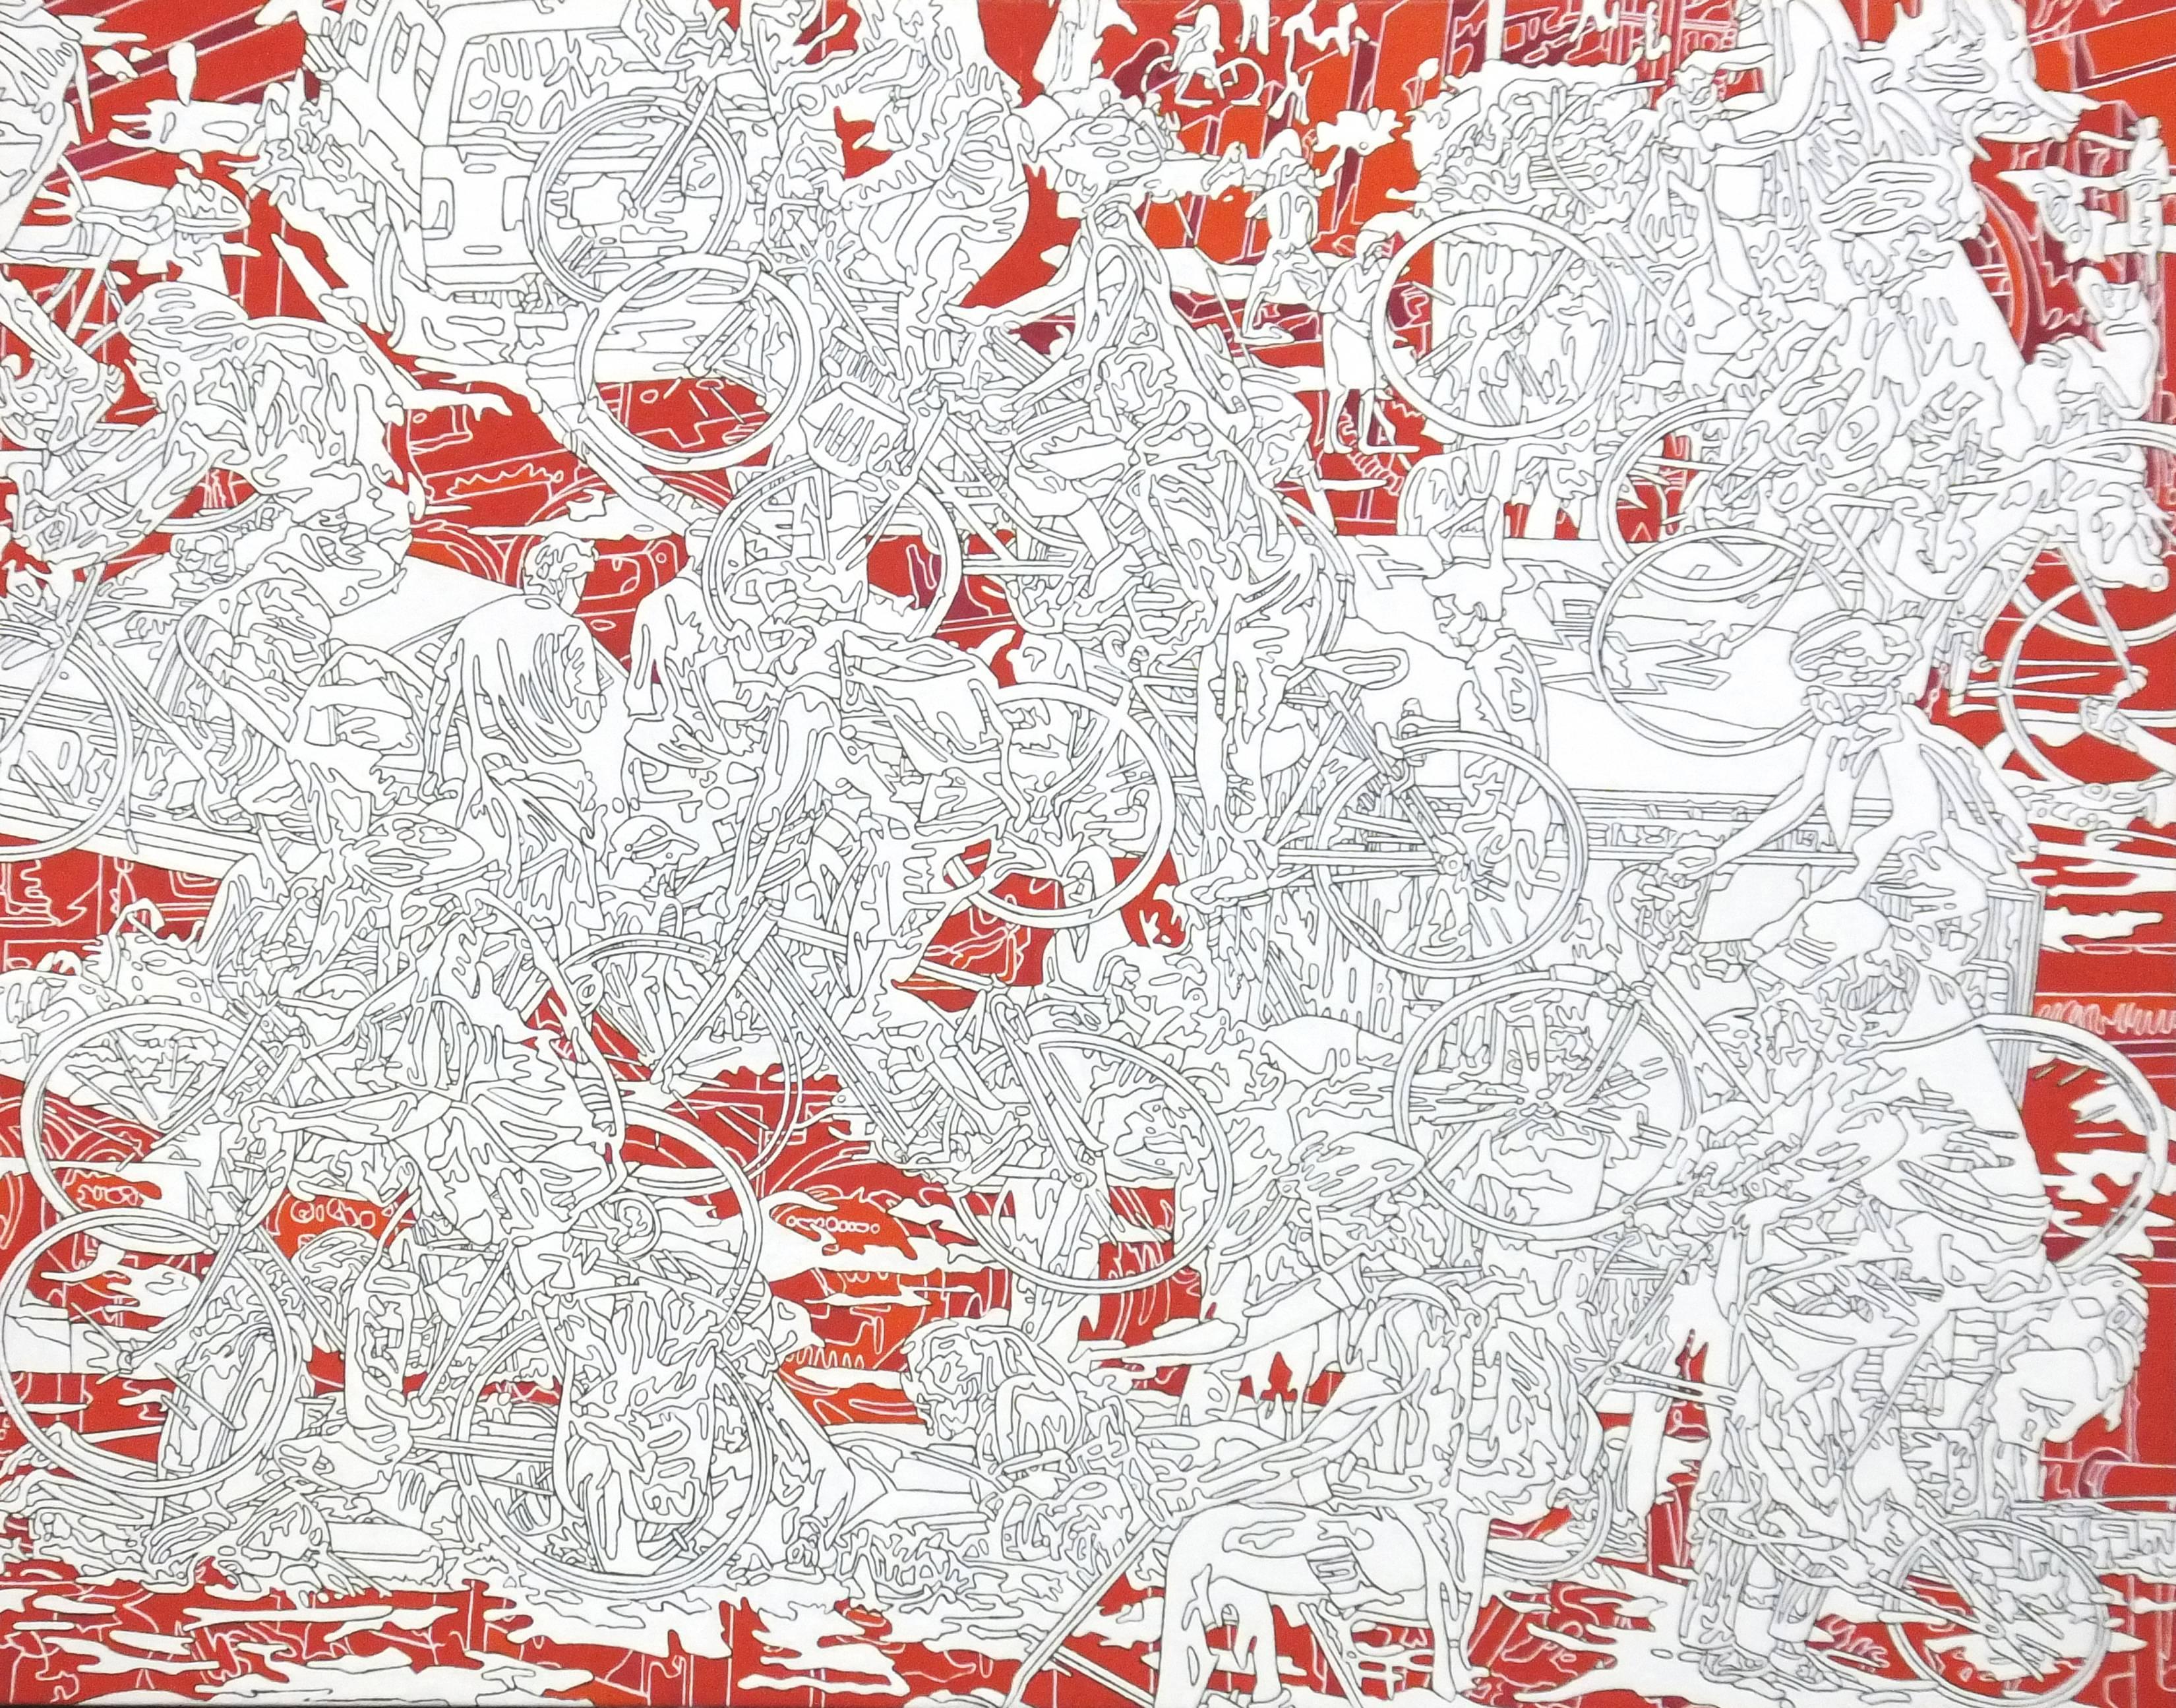 Park-r-1, rot-weiße Linienzeichnung, belebte Stadtszene, abstrahierte Menschen